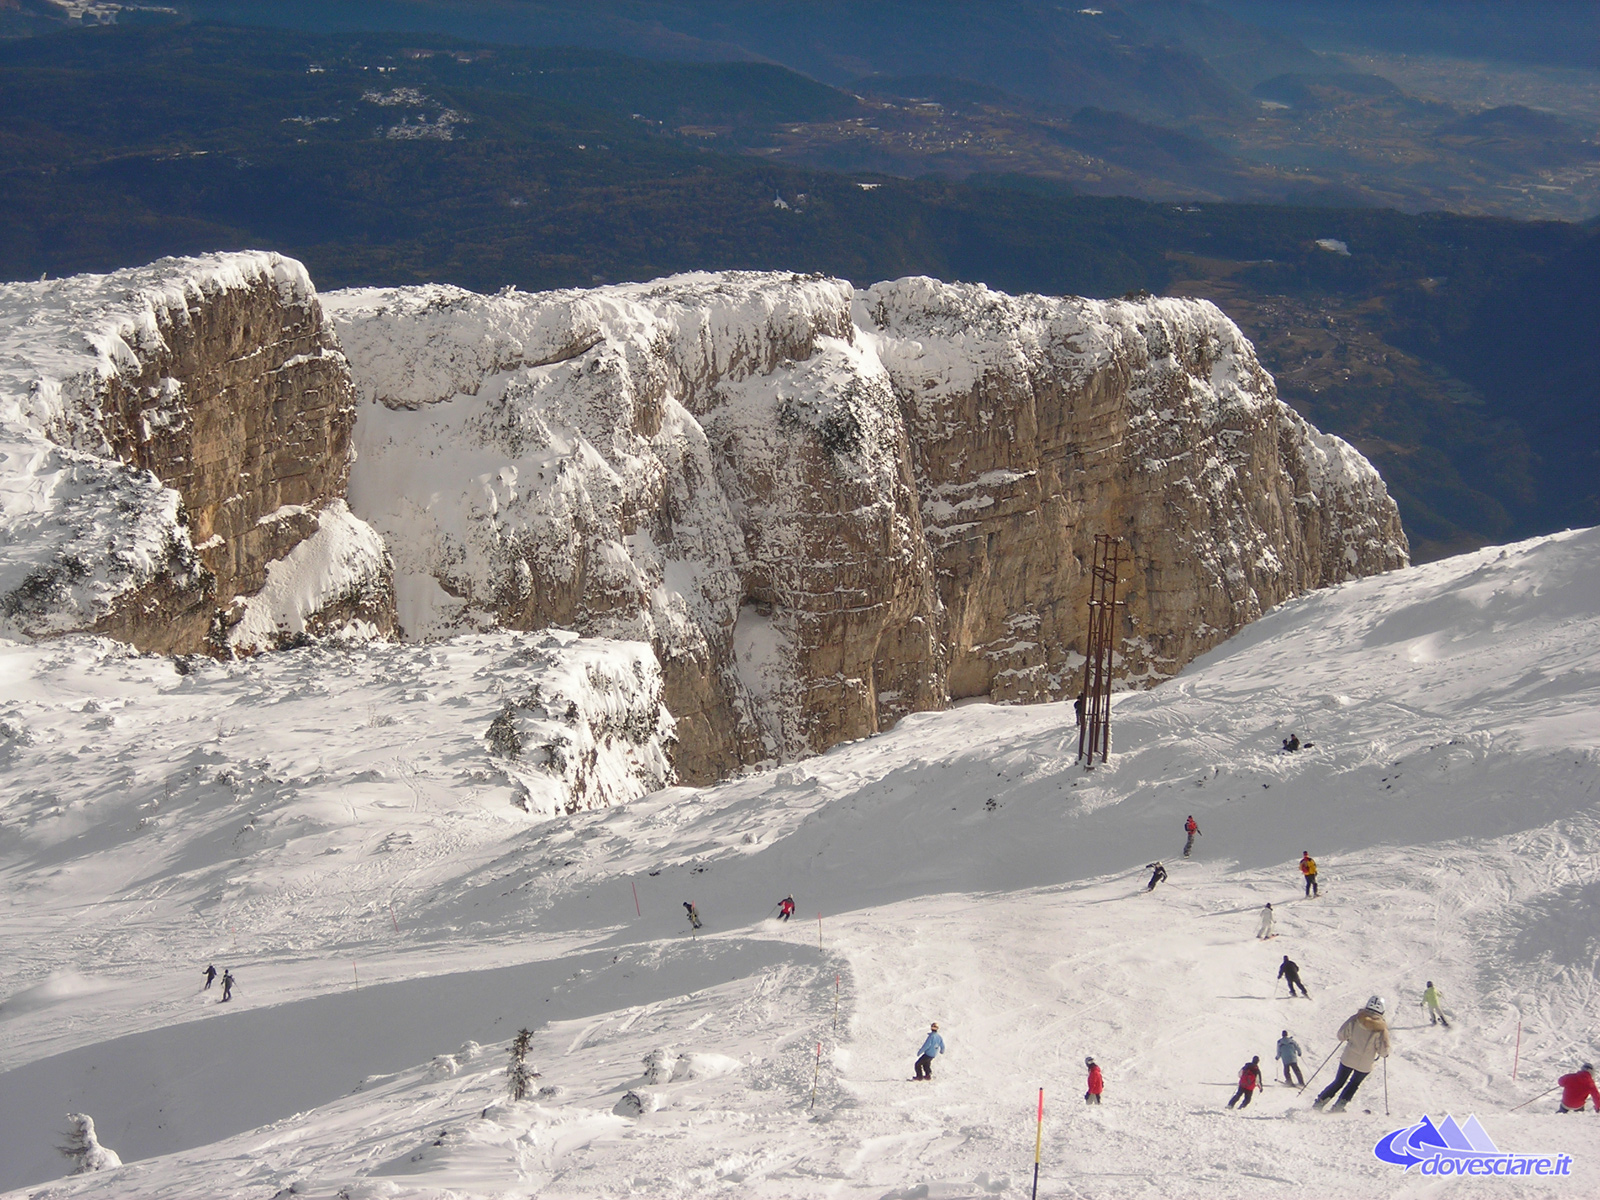 PAGANELLA - Dall'Alpine Rockfest all'alba in quota, tutti gli eventi dell'inverno